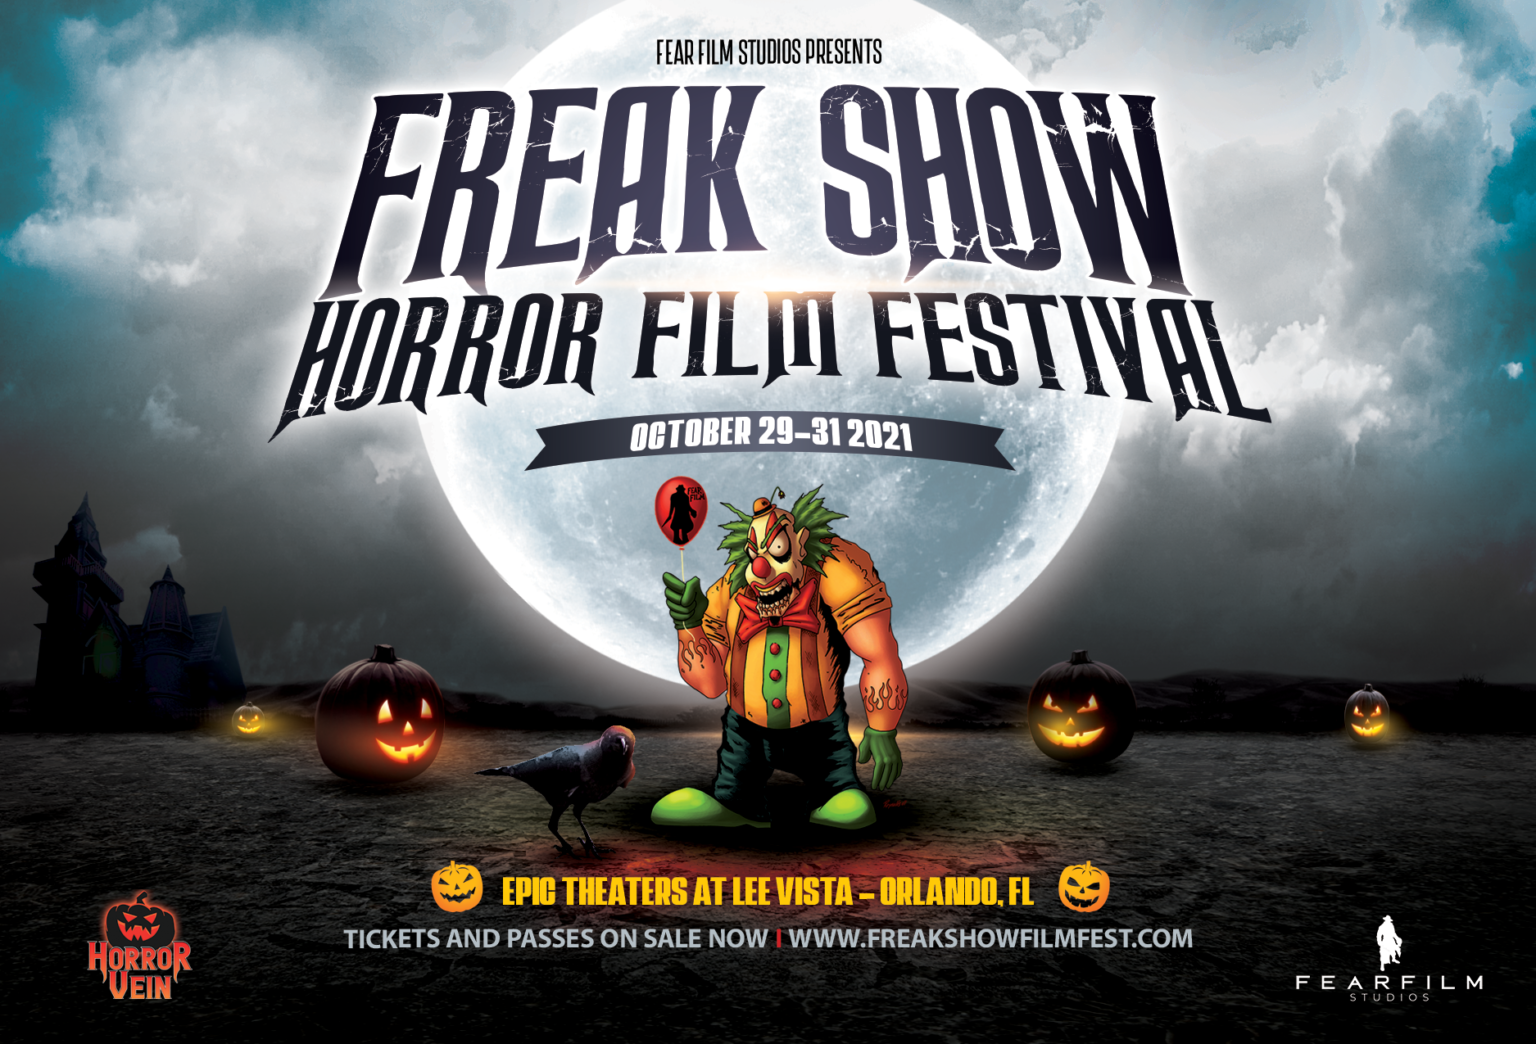 FREAK SHOW Horror Film Festival 2021 - HORROR VEIN